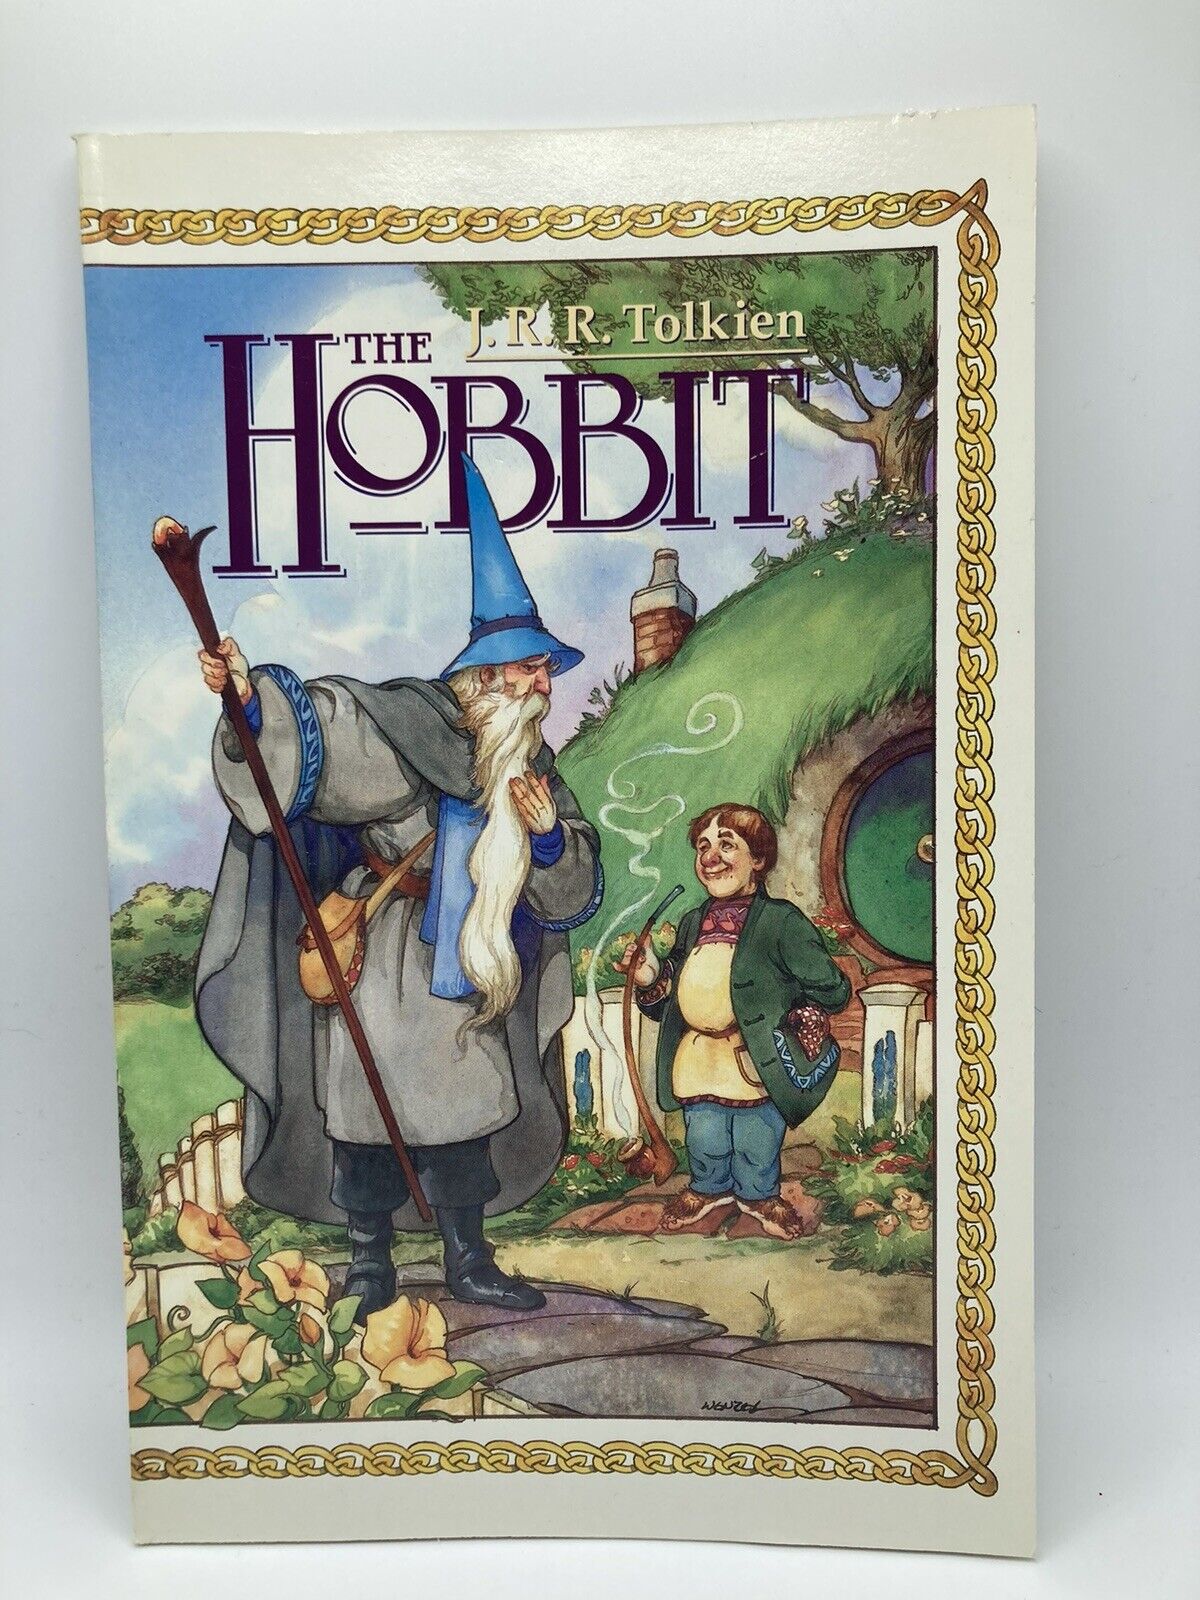 The Hobbit #1 Graphic Novel Eclipse Books Comic 1989 J.R.R. Tolkien Dixon Wenzel